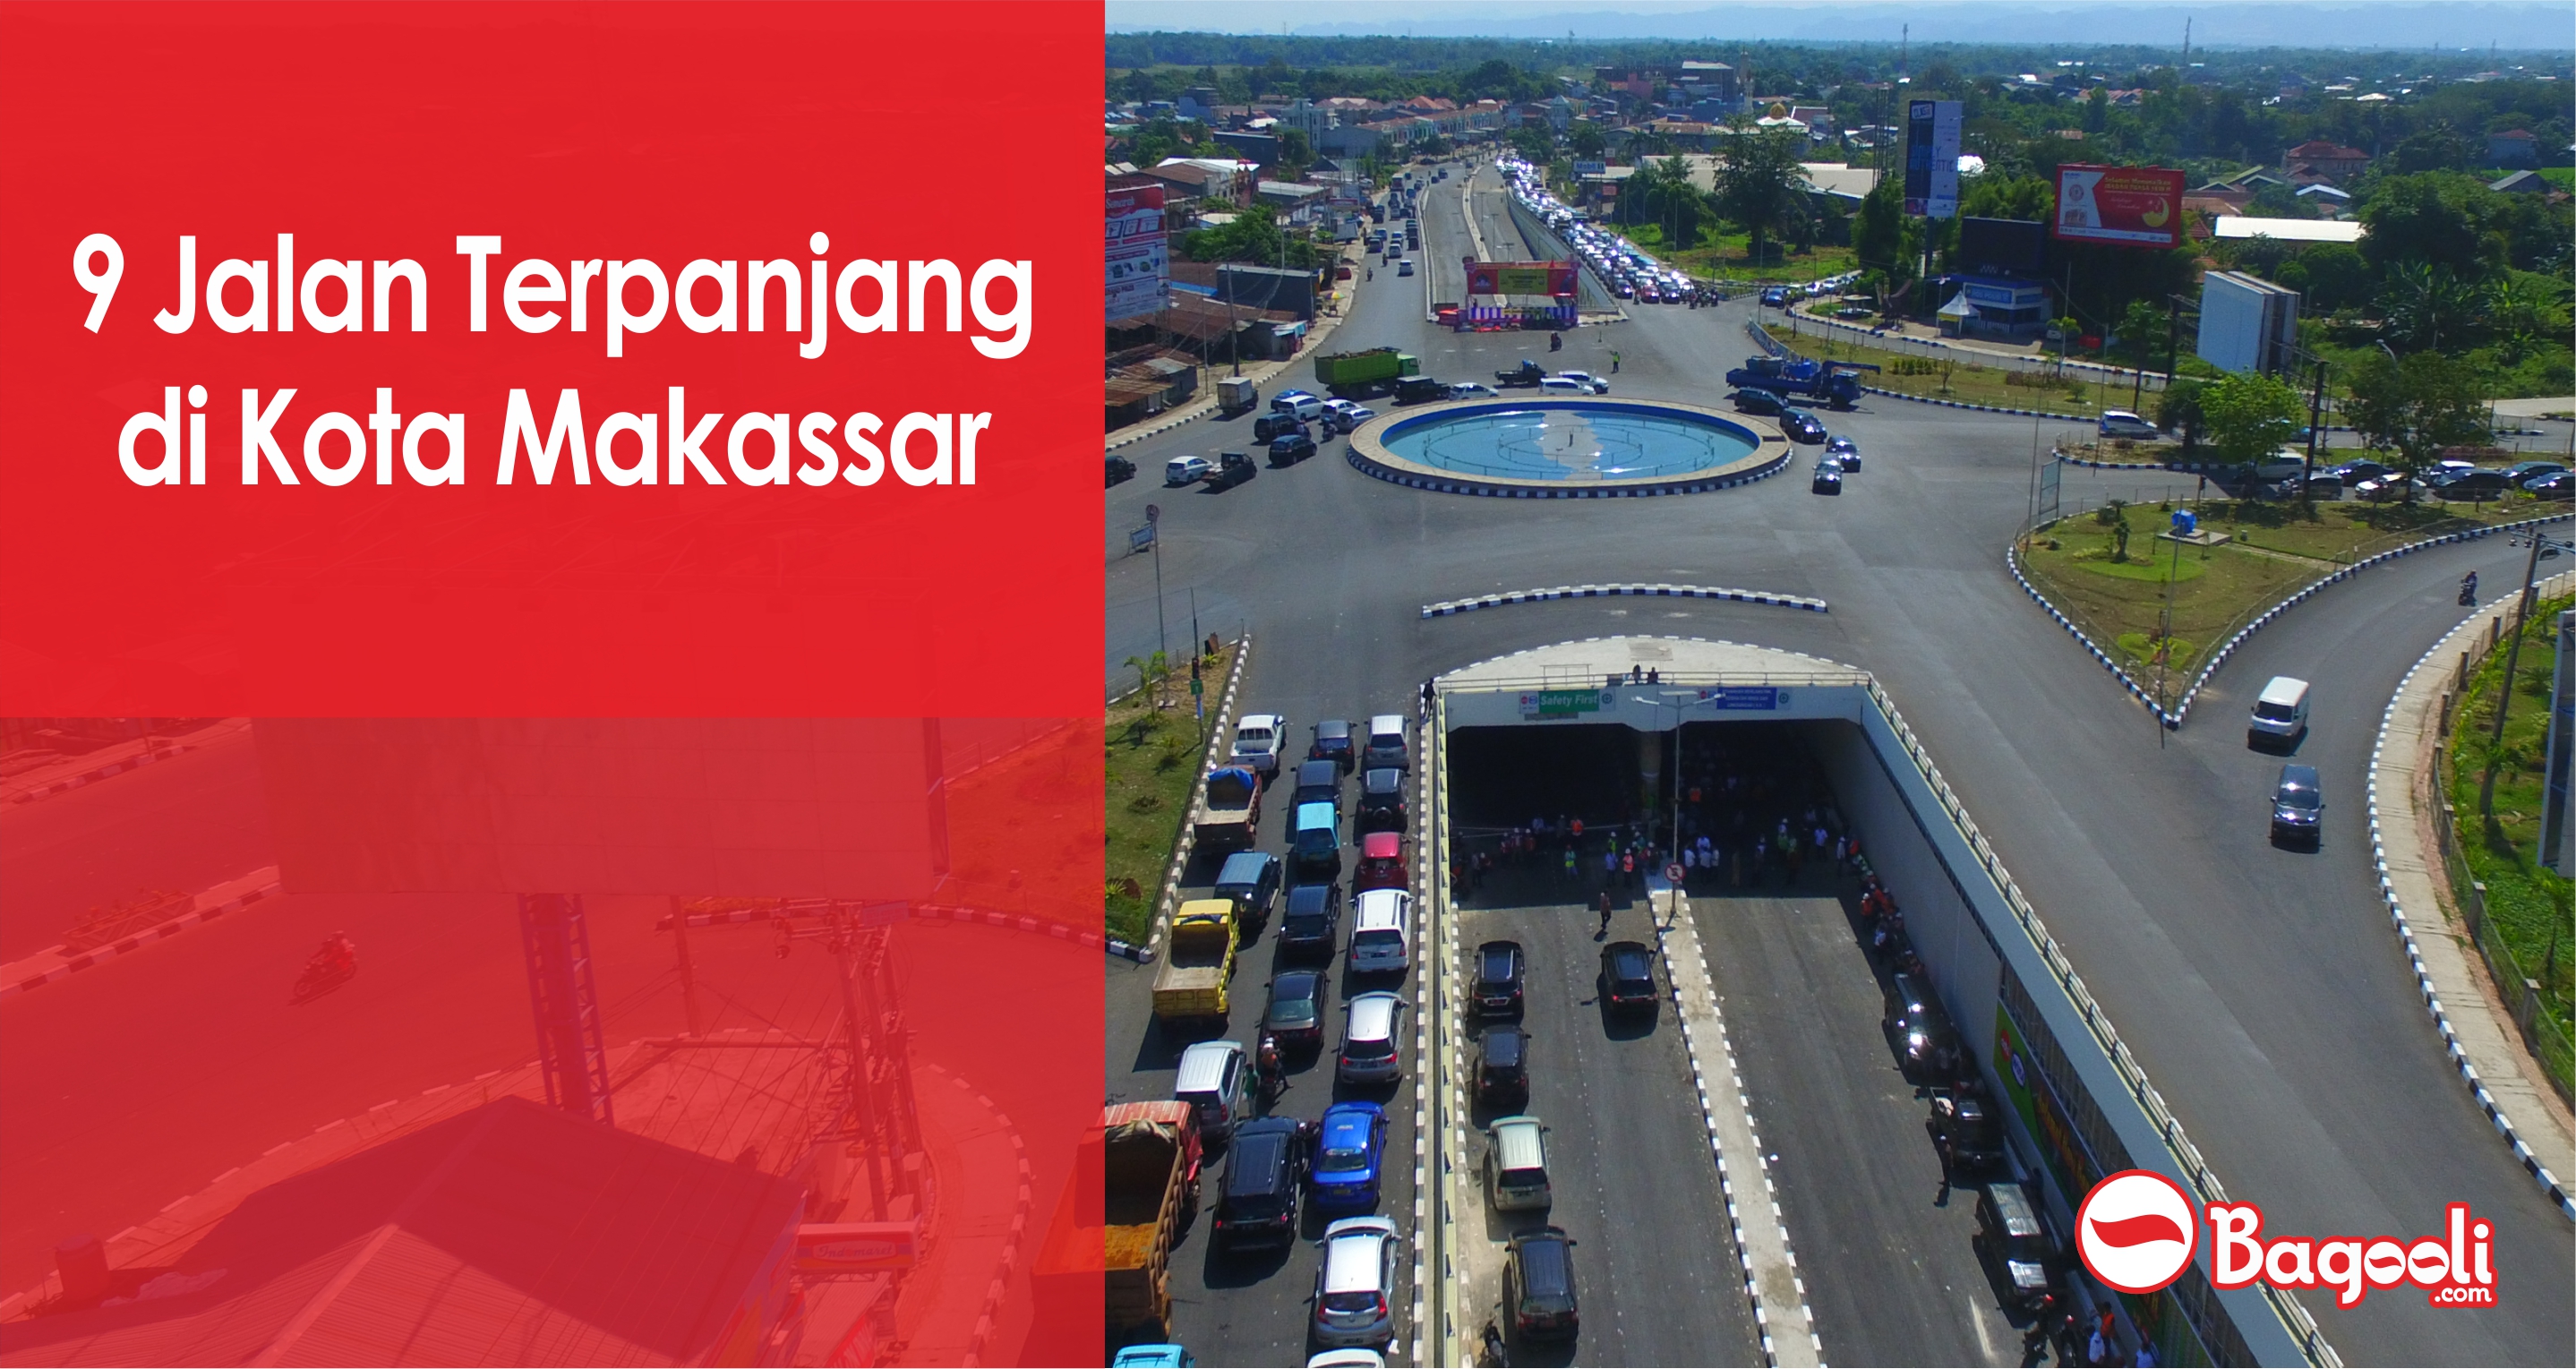 9 Jalan Terpanjang di Kota Makassar